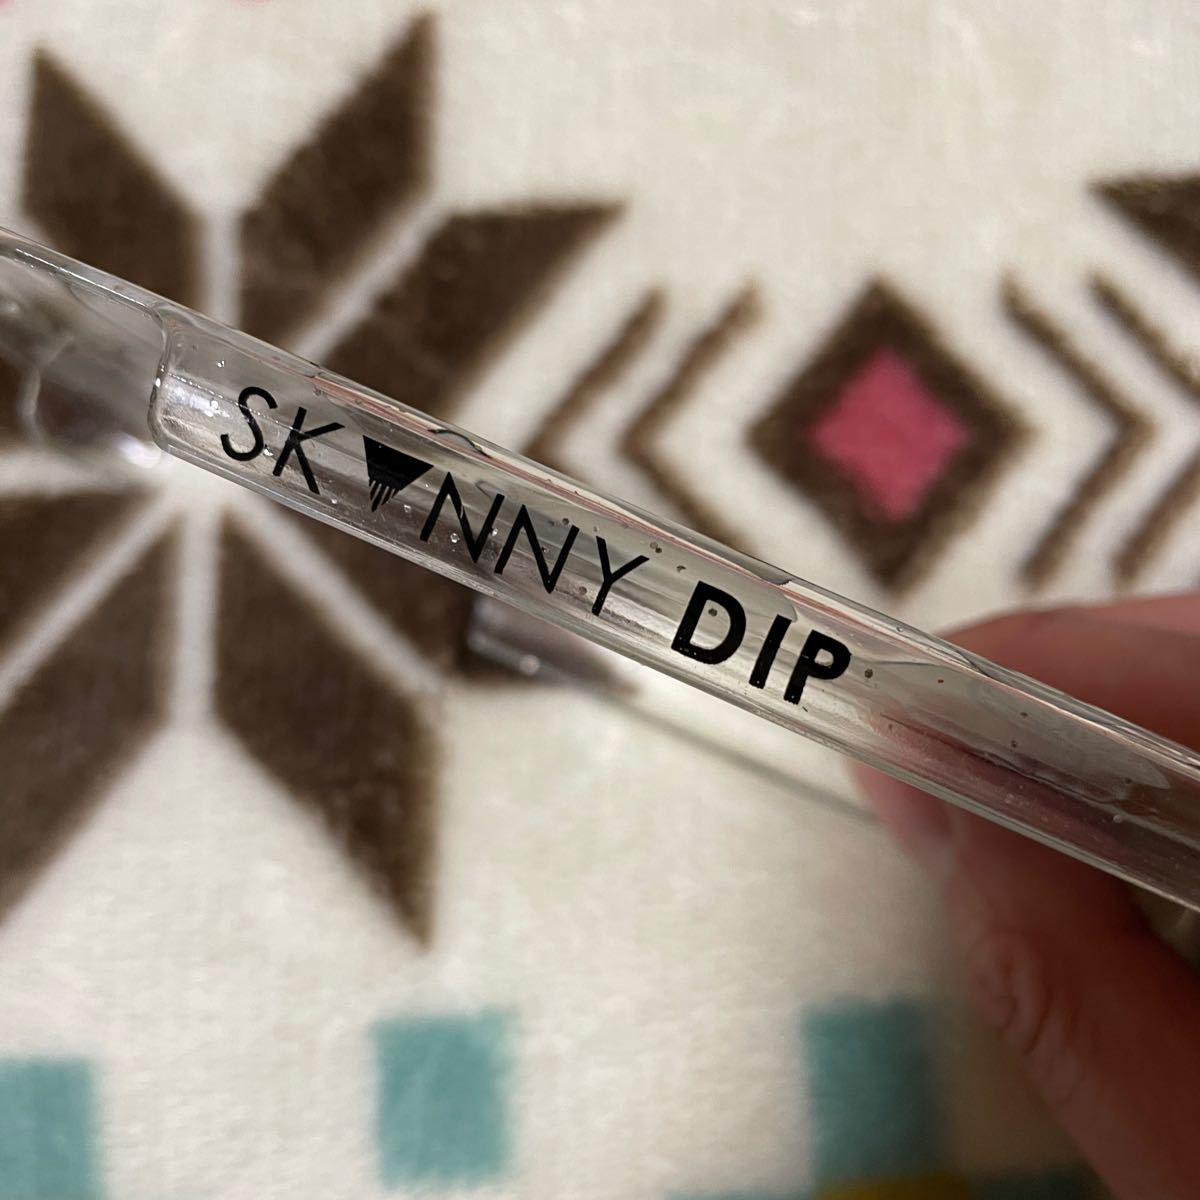 SKINNY DIP iPhone7 ハードケース